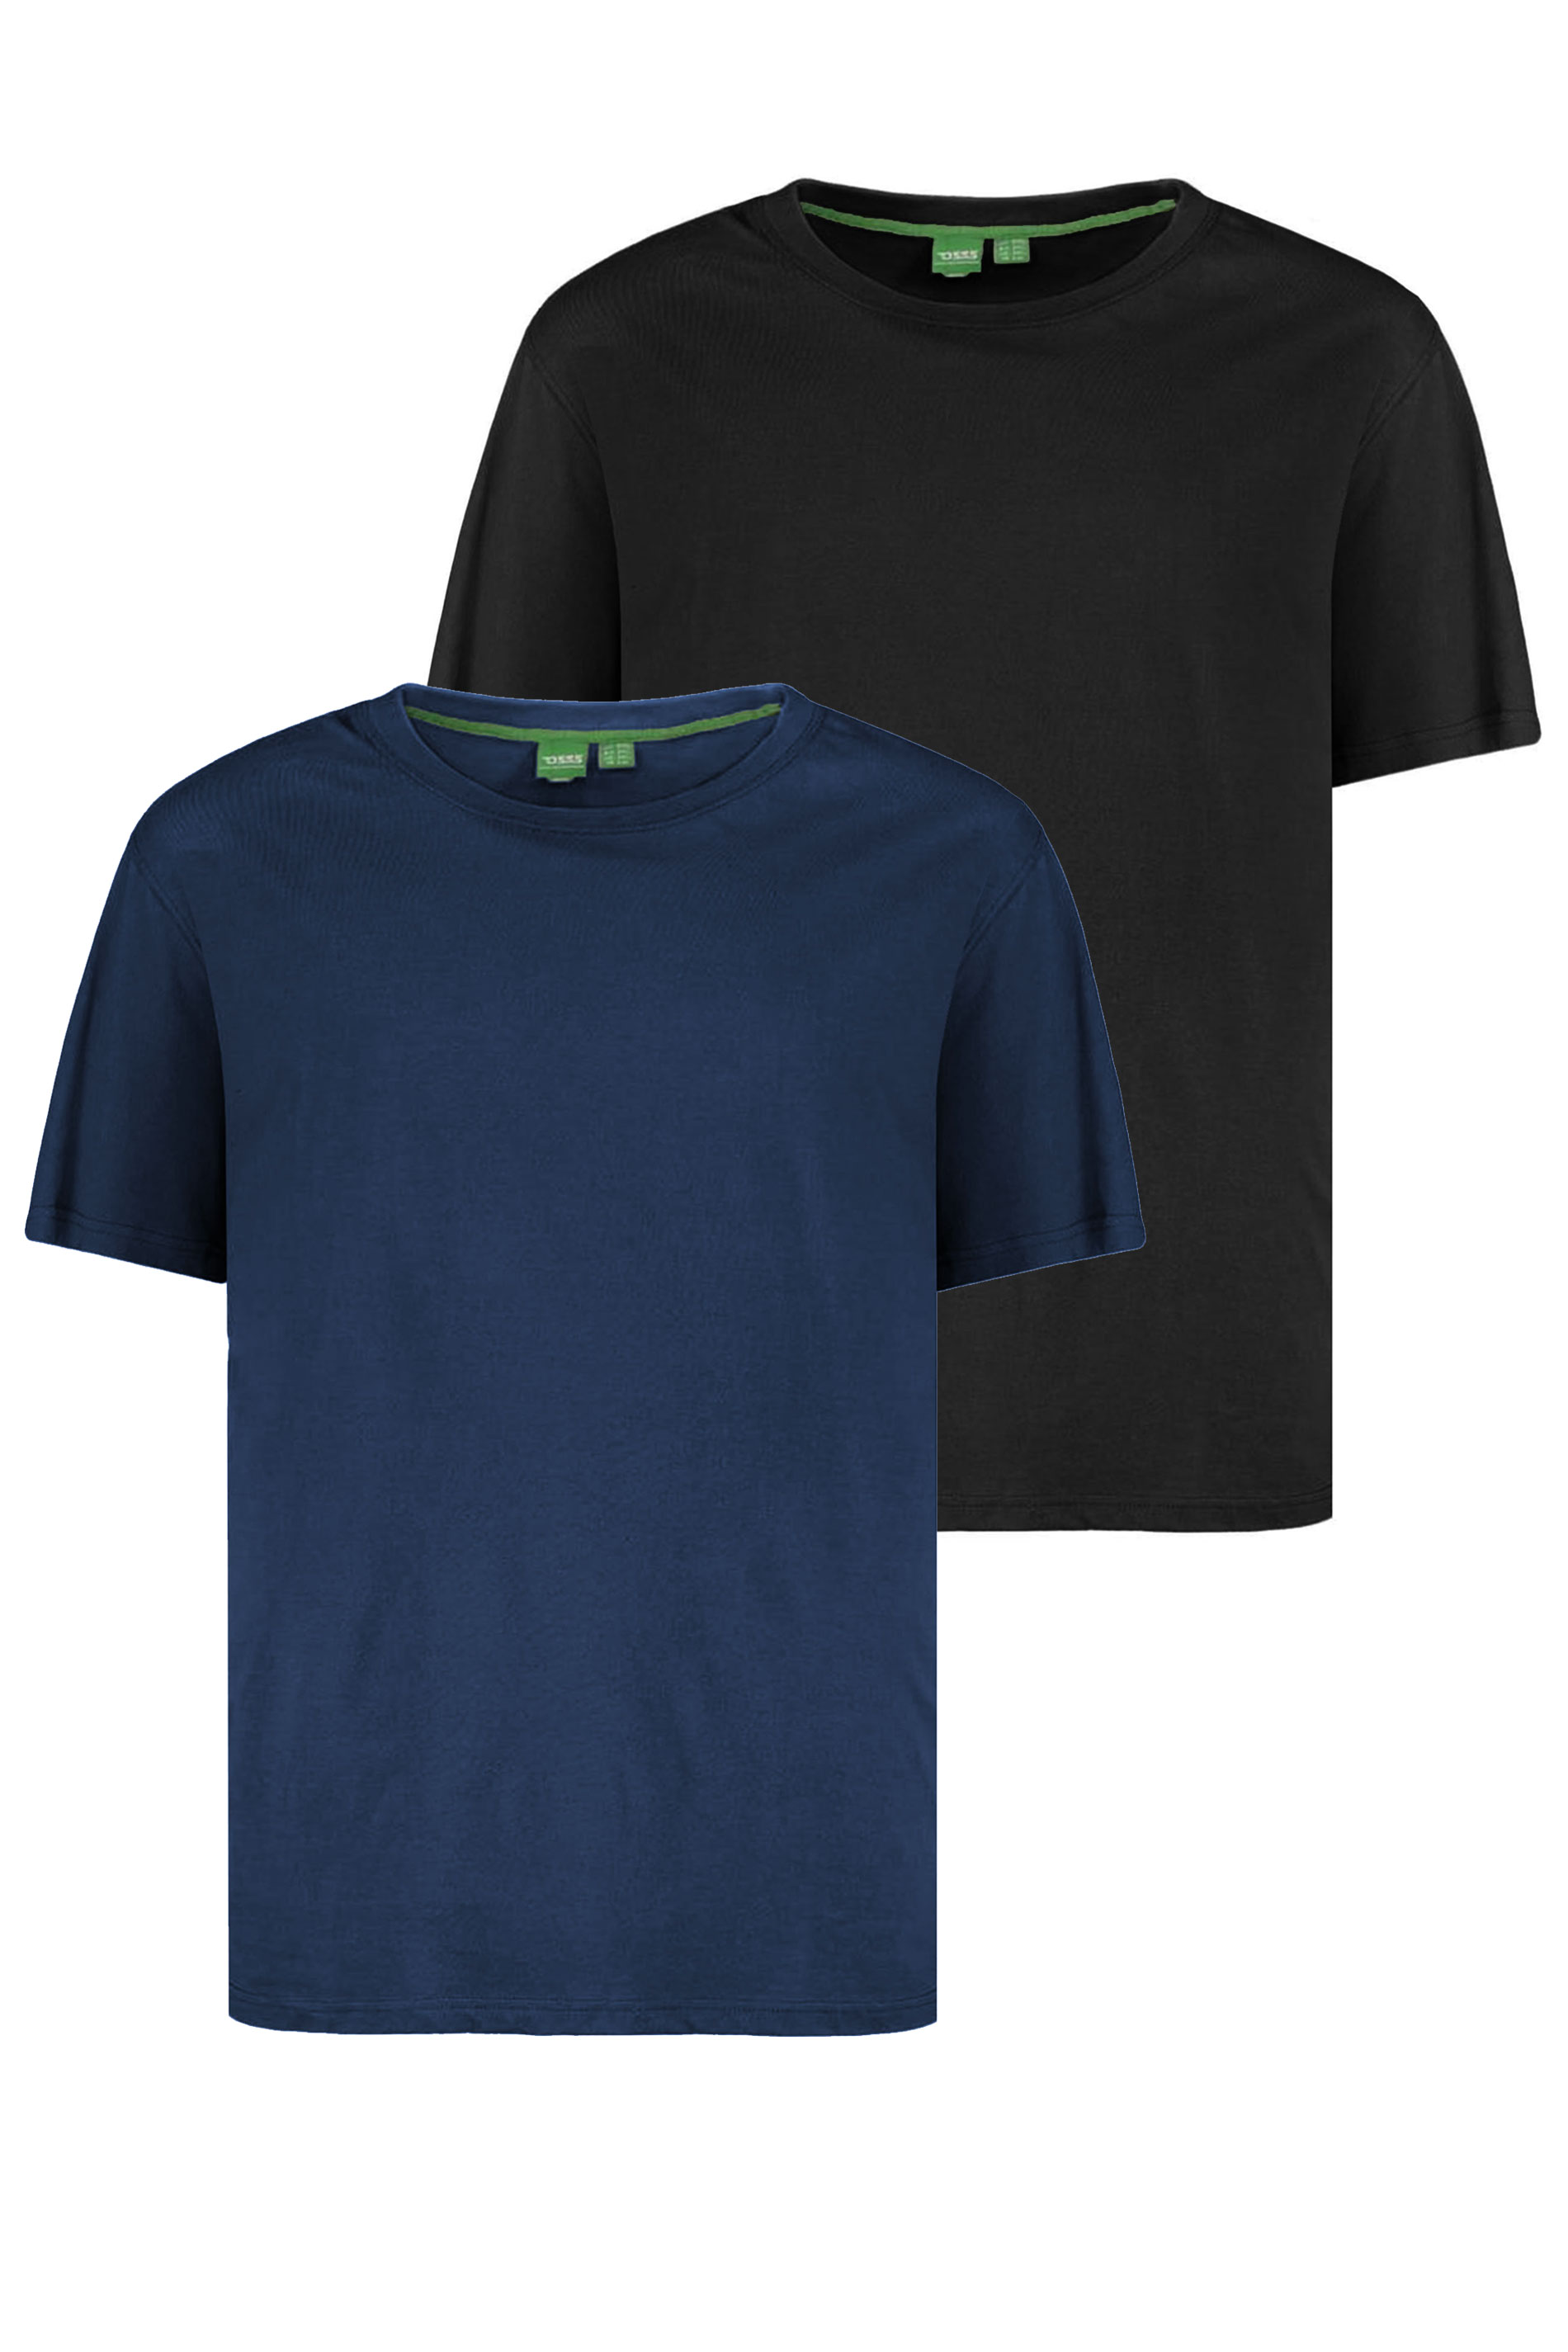 D555 Navy Blue & Black 2 Pack T-Shirts | BadRhino 3